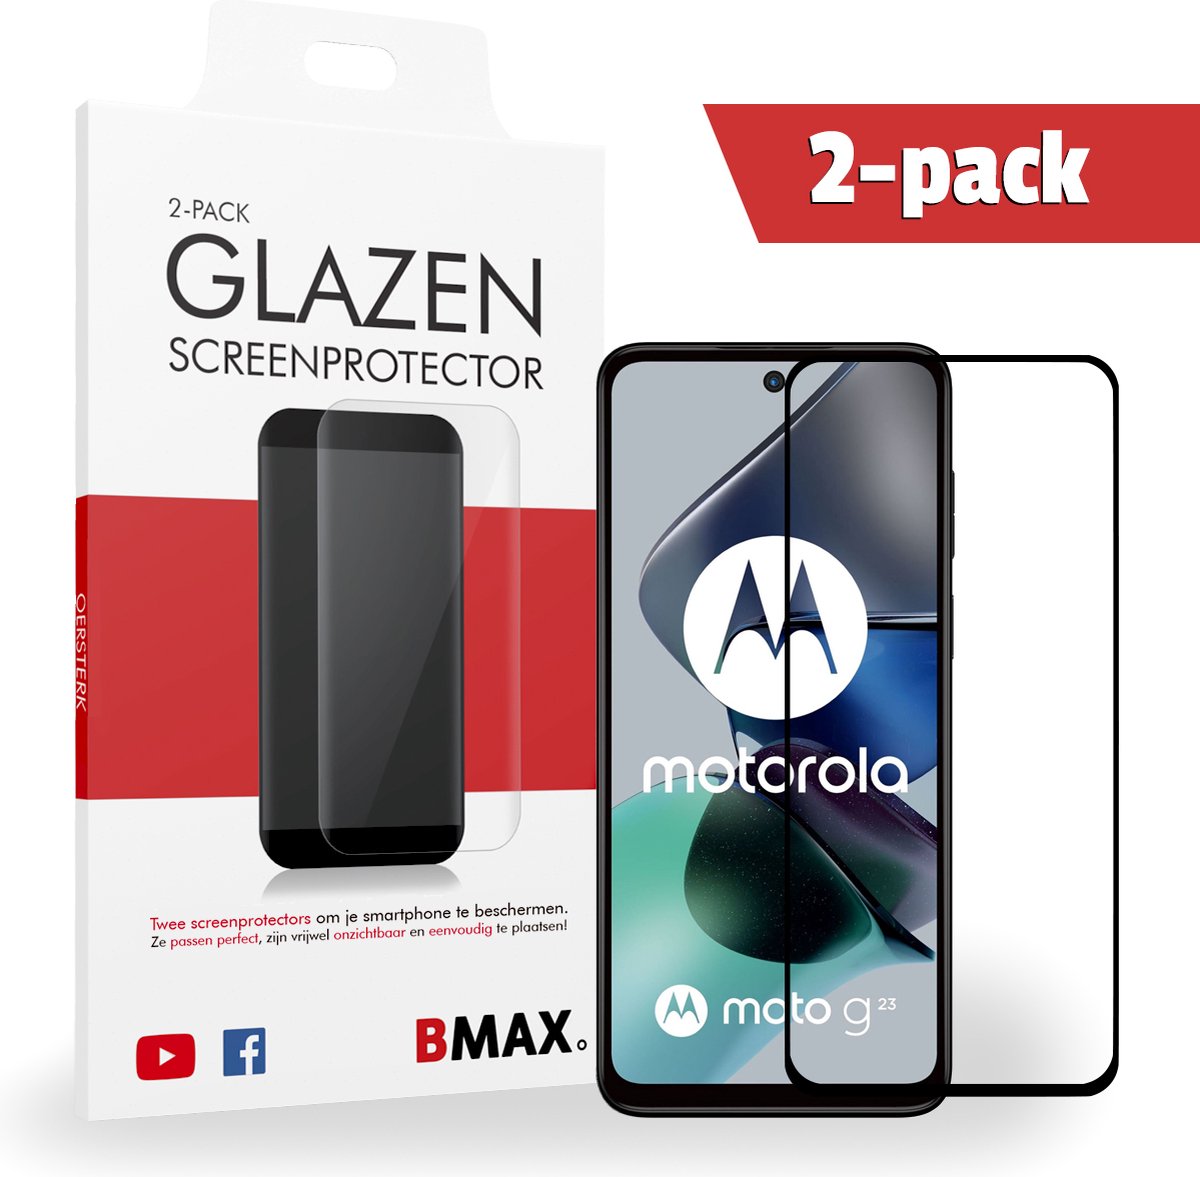 2-pack BMAX Screenprotectors geschikt voor Moto G23 - Van gehard glas - Samsung screenprotectors - Telefoonaccessoires - Telefonie & Accessoires - Beschermglas - Glazen screenprotectors